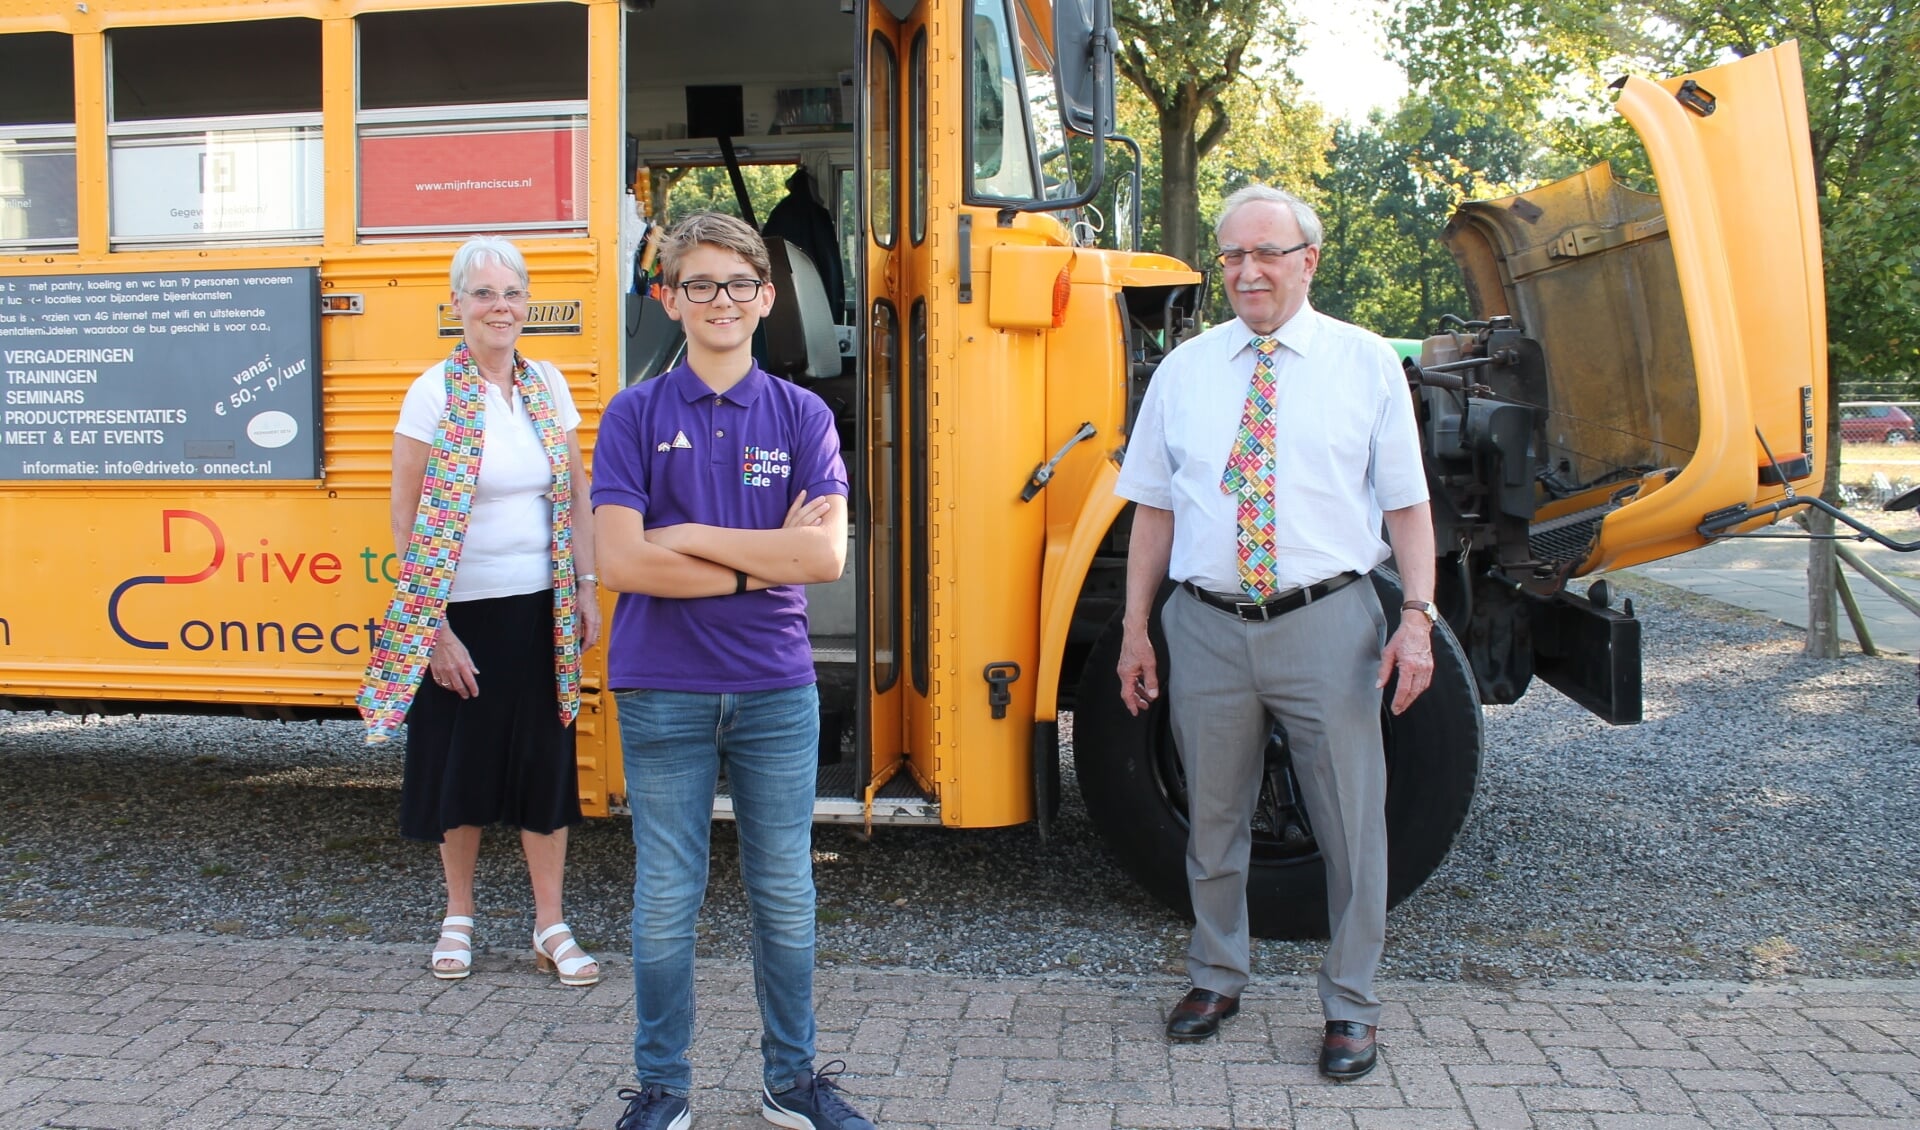 Marie-José Eberson, Peter 't Hoen en Max-Merijn Terpstra bij de SDG bus 